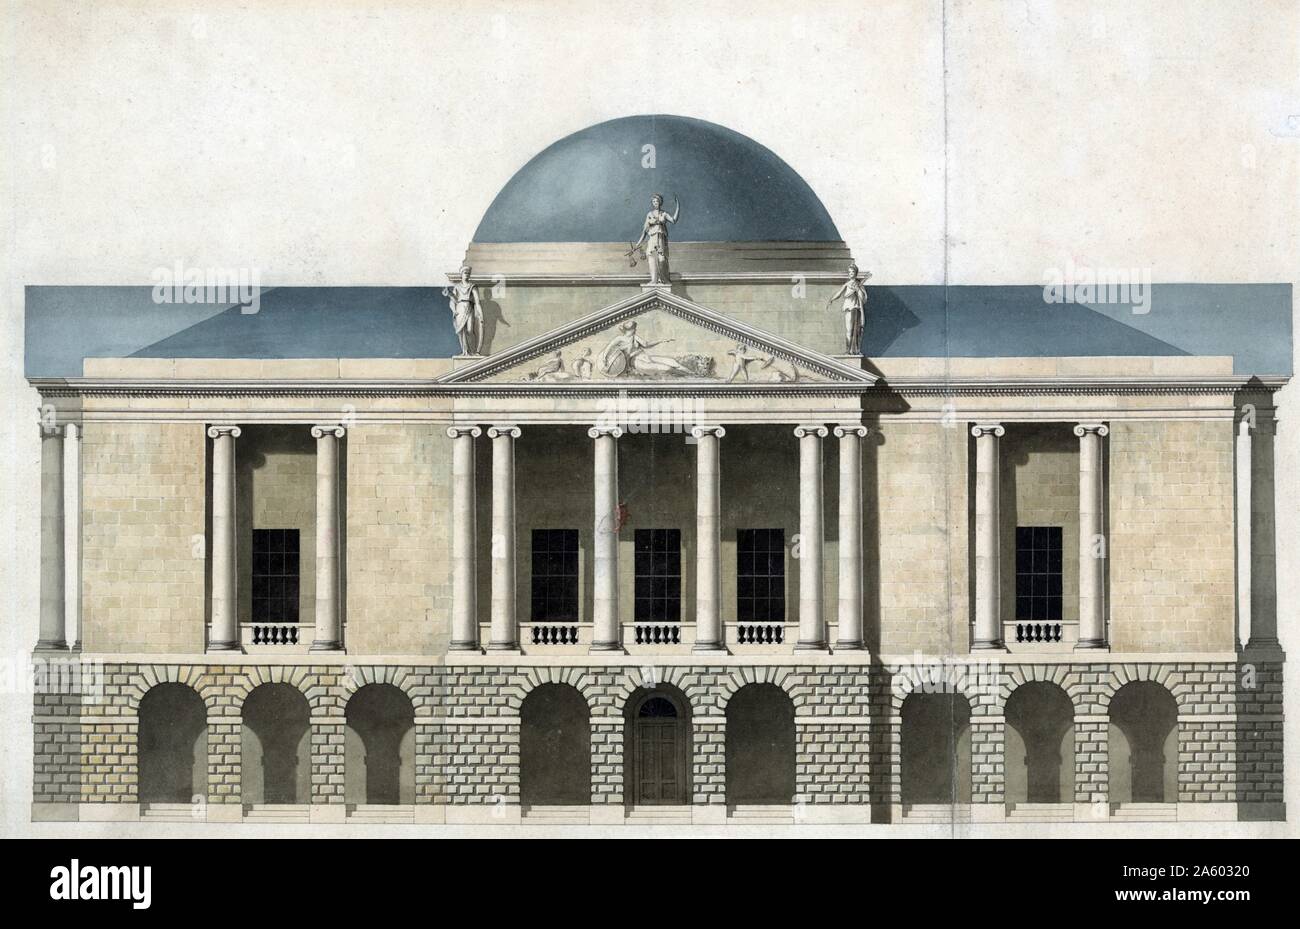 New County Hall, Stafford, en Angleterre. Projet de façade. L'élévation par John Nash, architecte. Dessin à l'aquarelle, encre et graphite sur papier. Banque D'Images